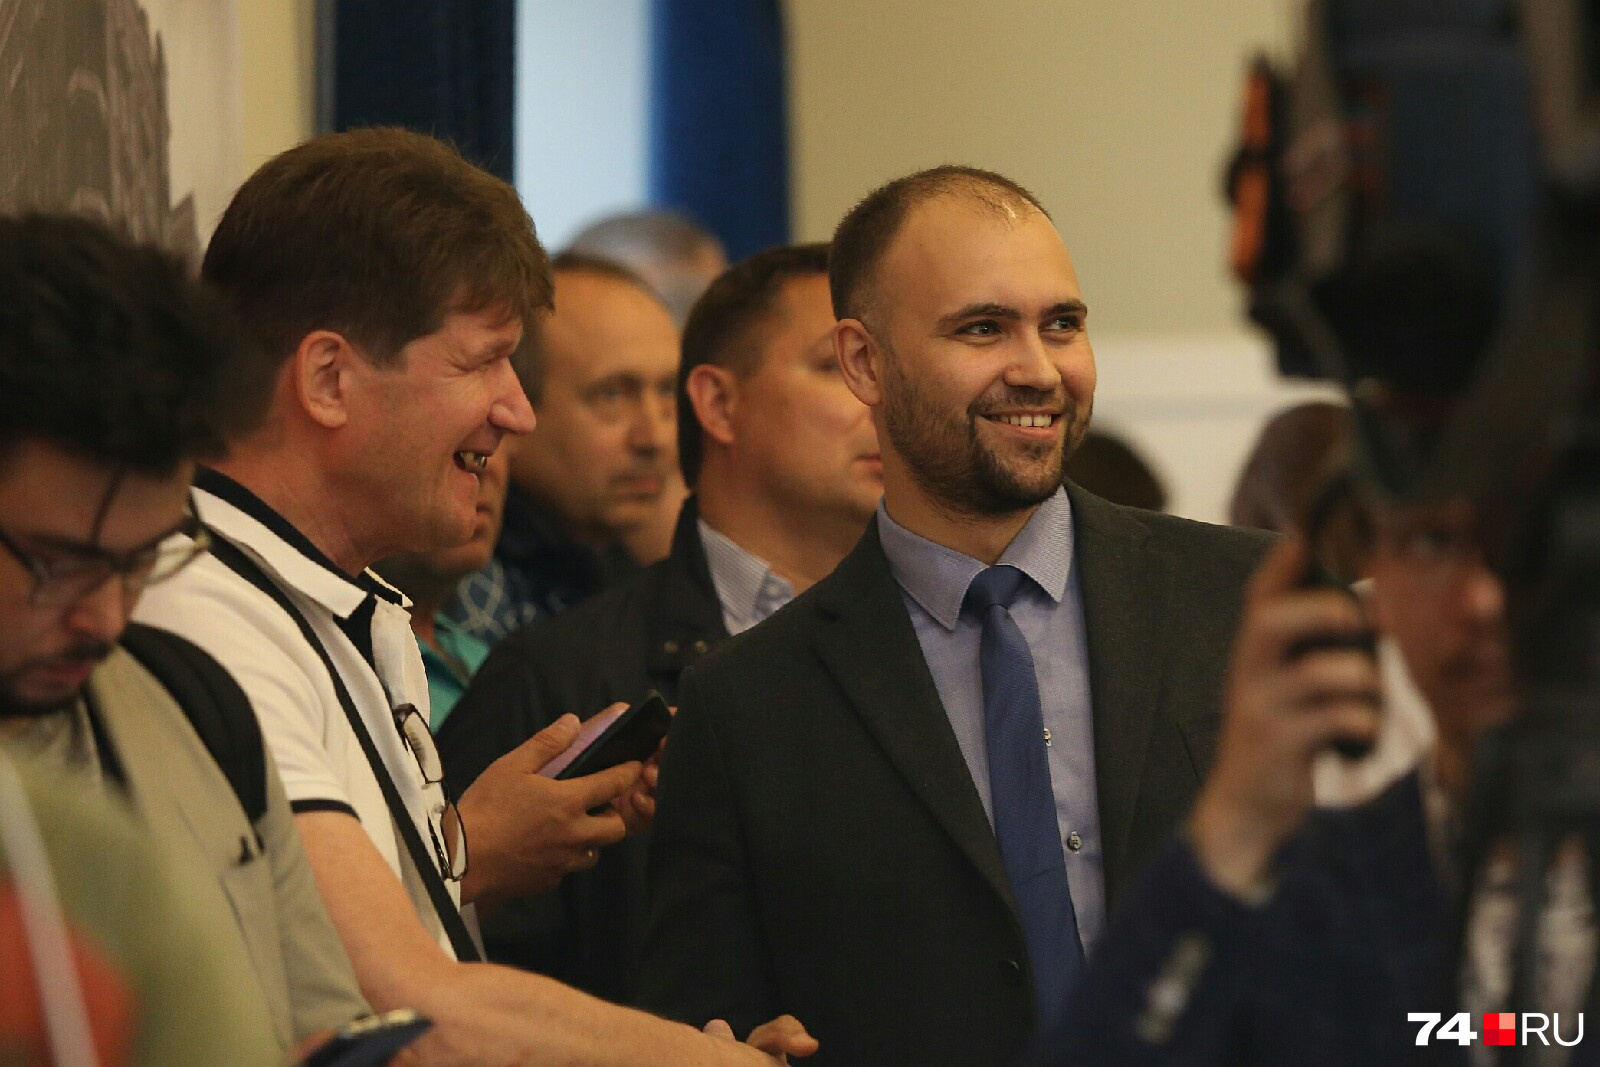 Кандидат в губернаторы Ярослав Щербаков (в центре) в хорошем настроении